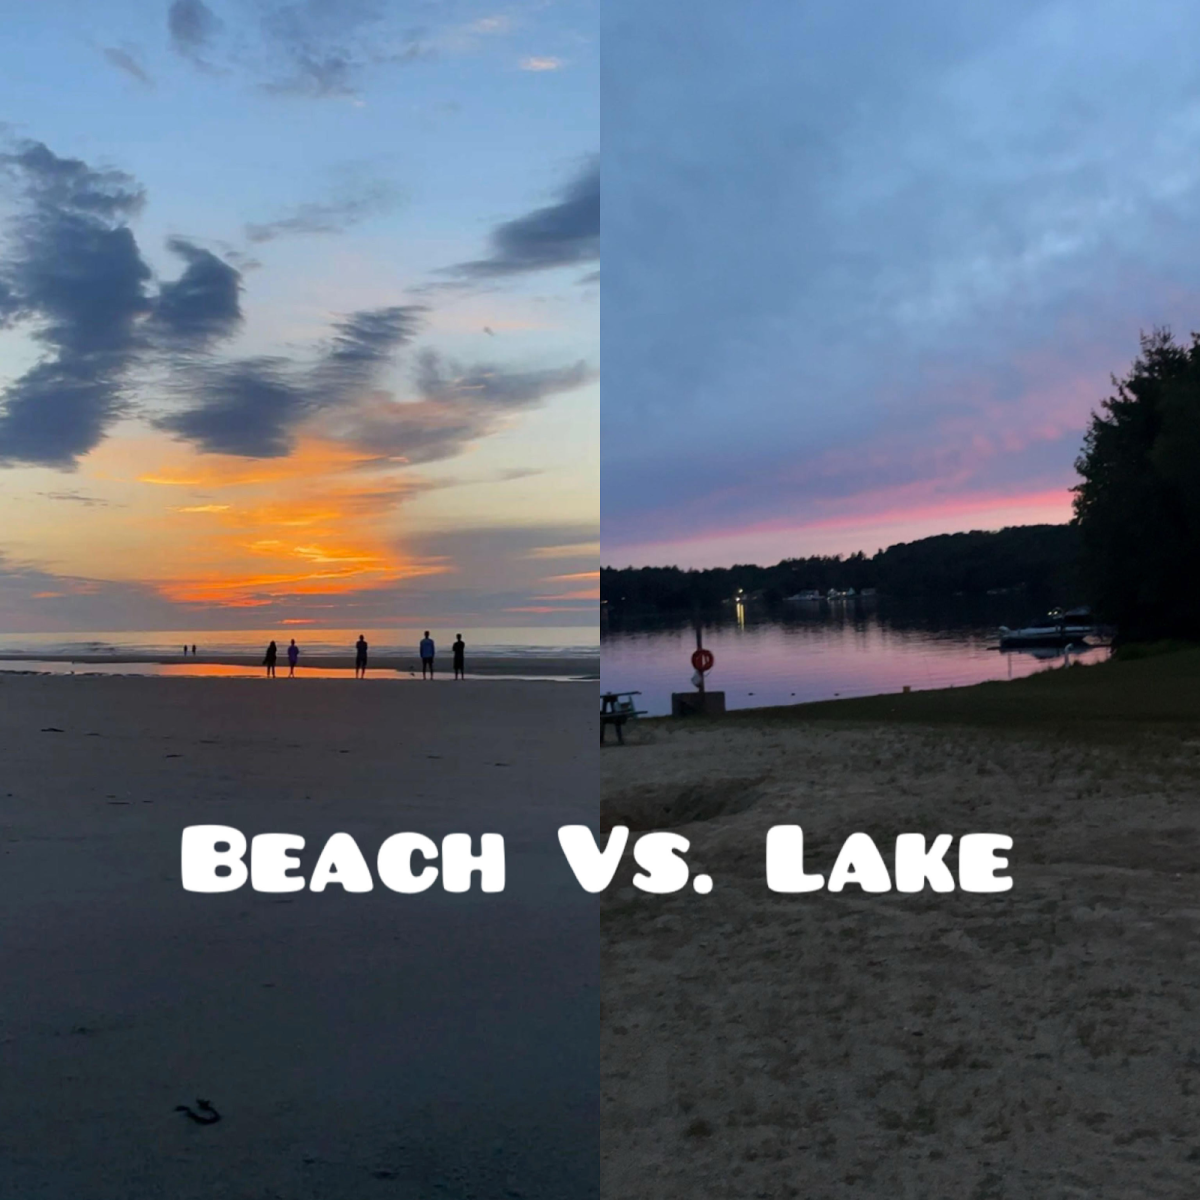 Beaches vs. Lakes